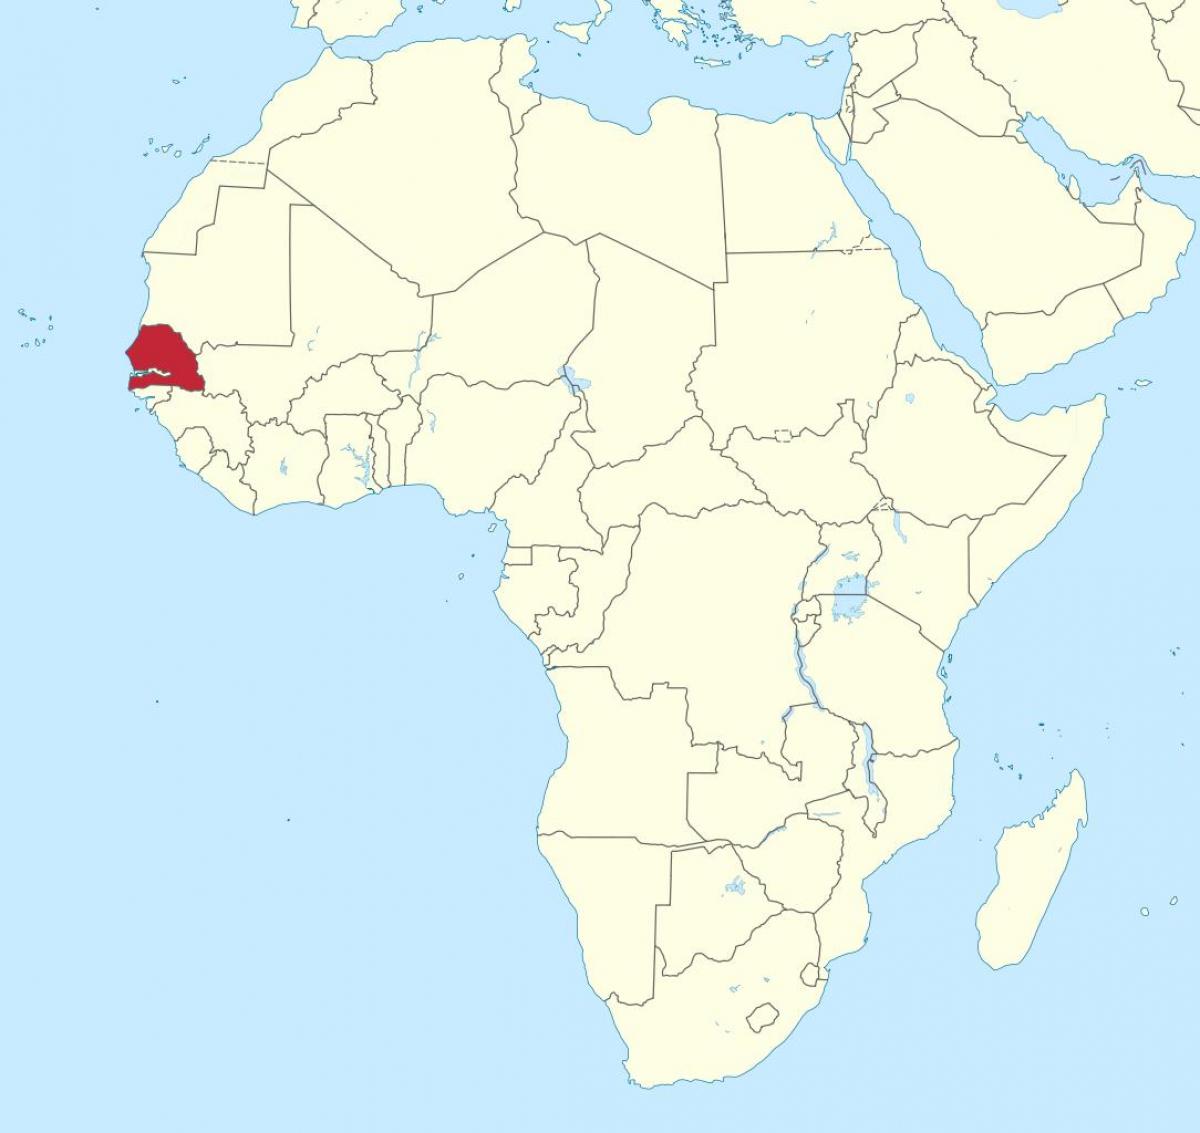 Senegal mapan afrika